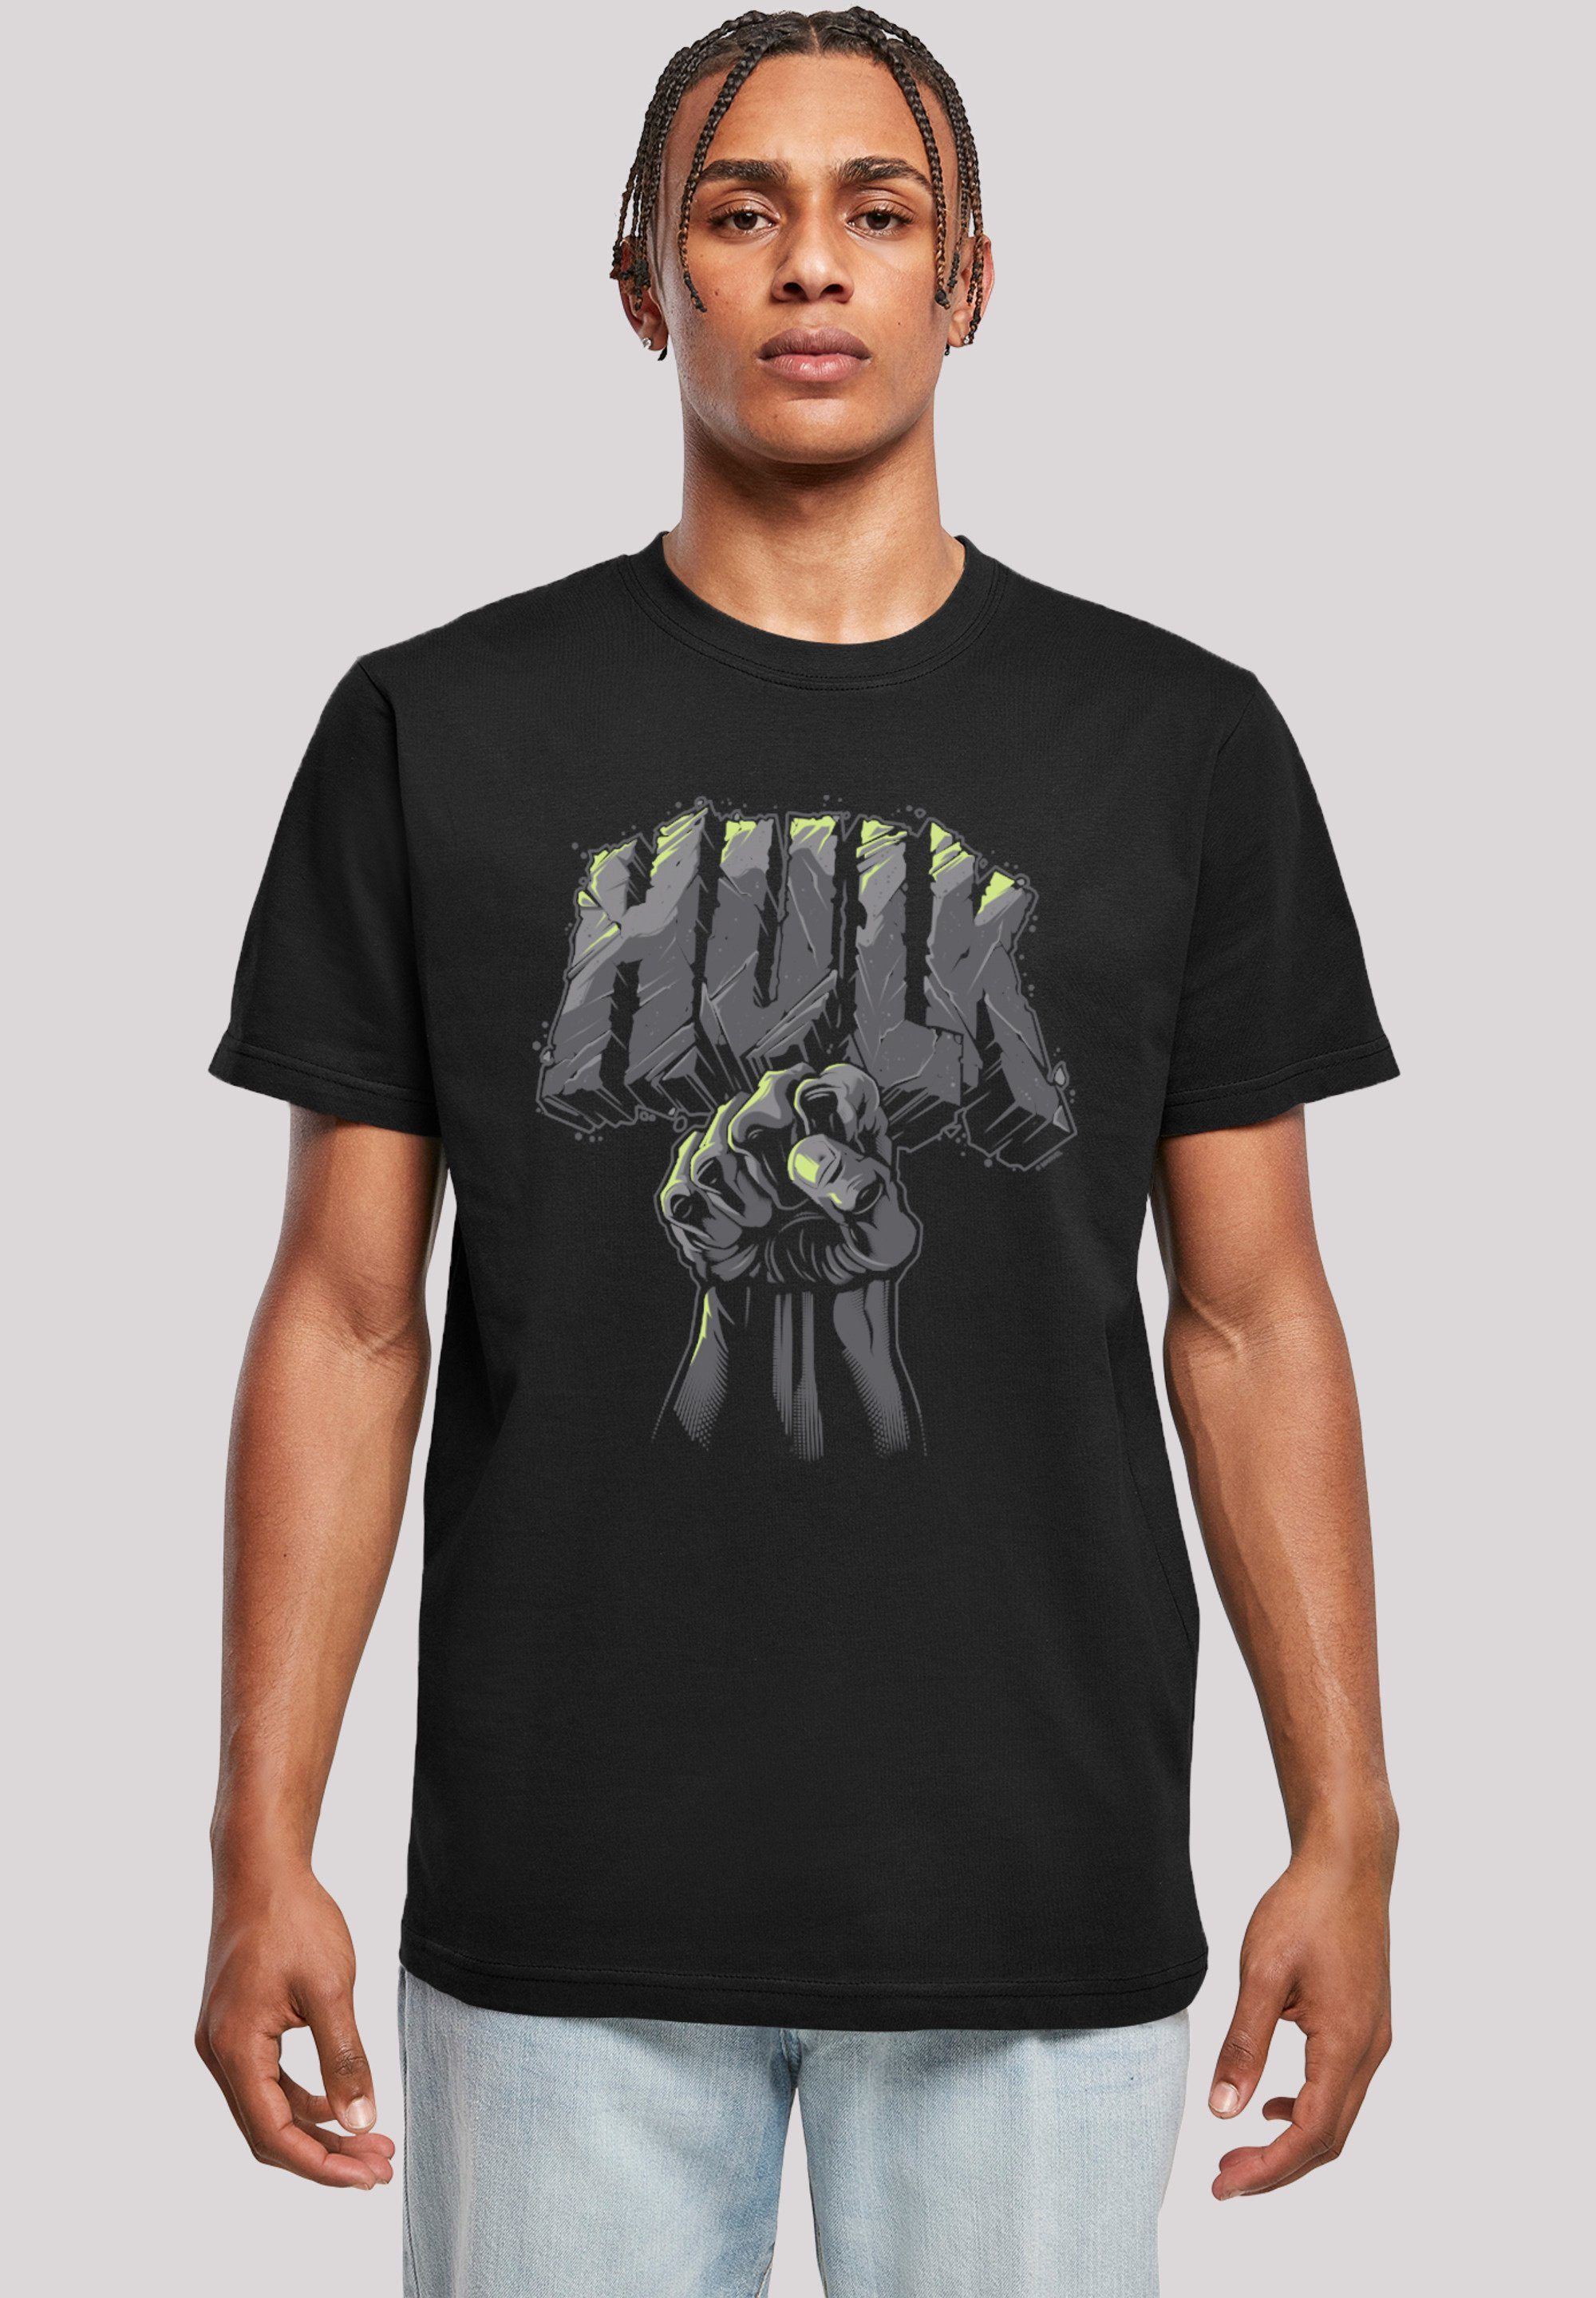 Hulk Punch T-Shirt Superhelden Logo und Doppelnähte am Print, F4NT4STIC am Saum Hals Marvel Rippbündchen